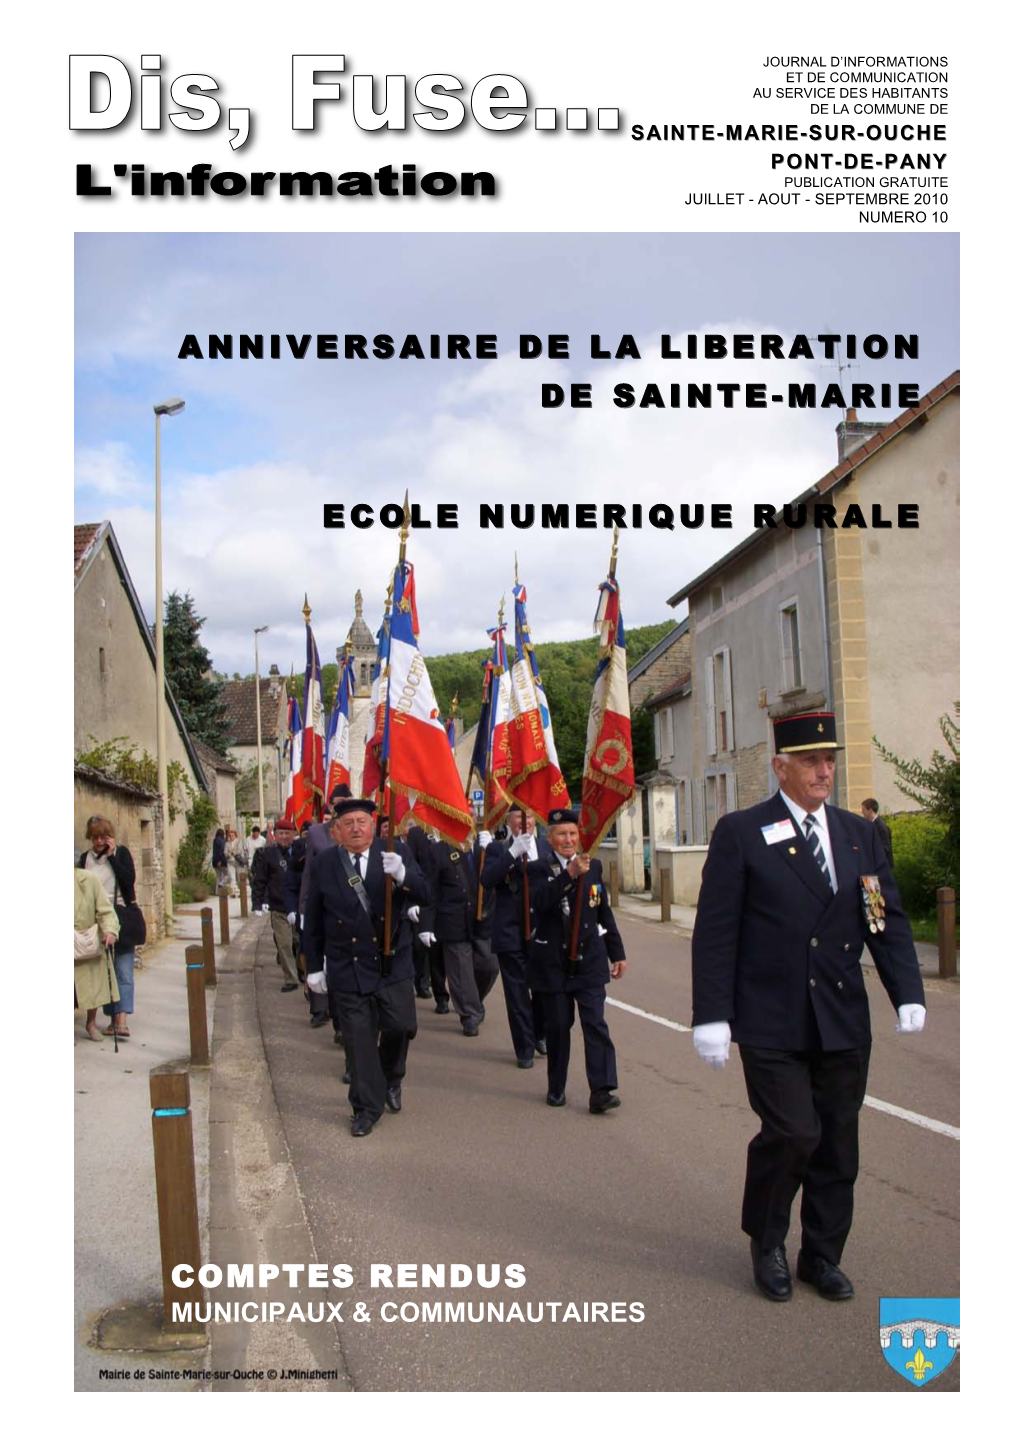 Anniversaire De La L Anniversaire De La Liberation Iberation De Sainte De Sainte-Marie Ecole Numerique Rura Ecole Numerique